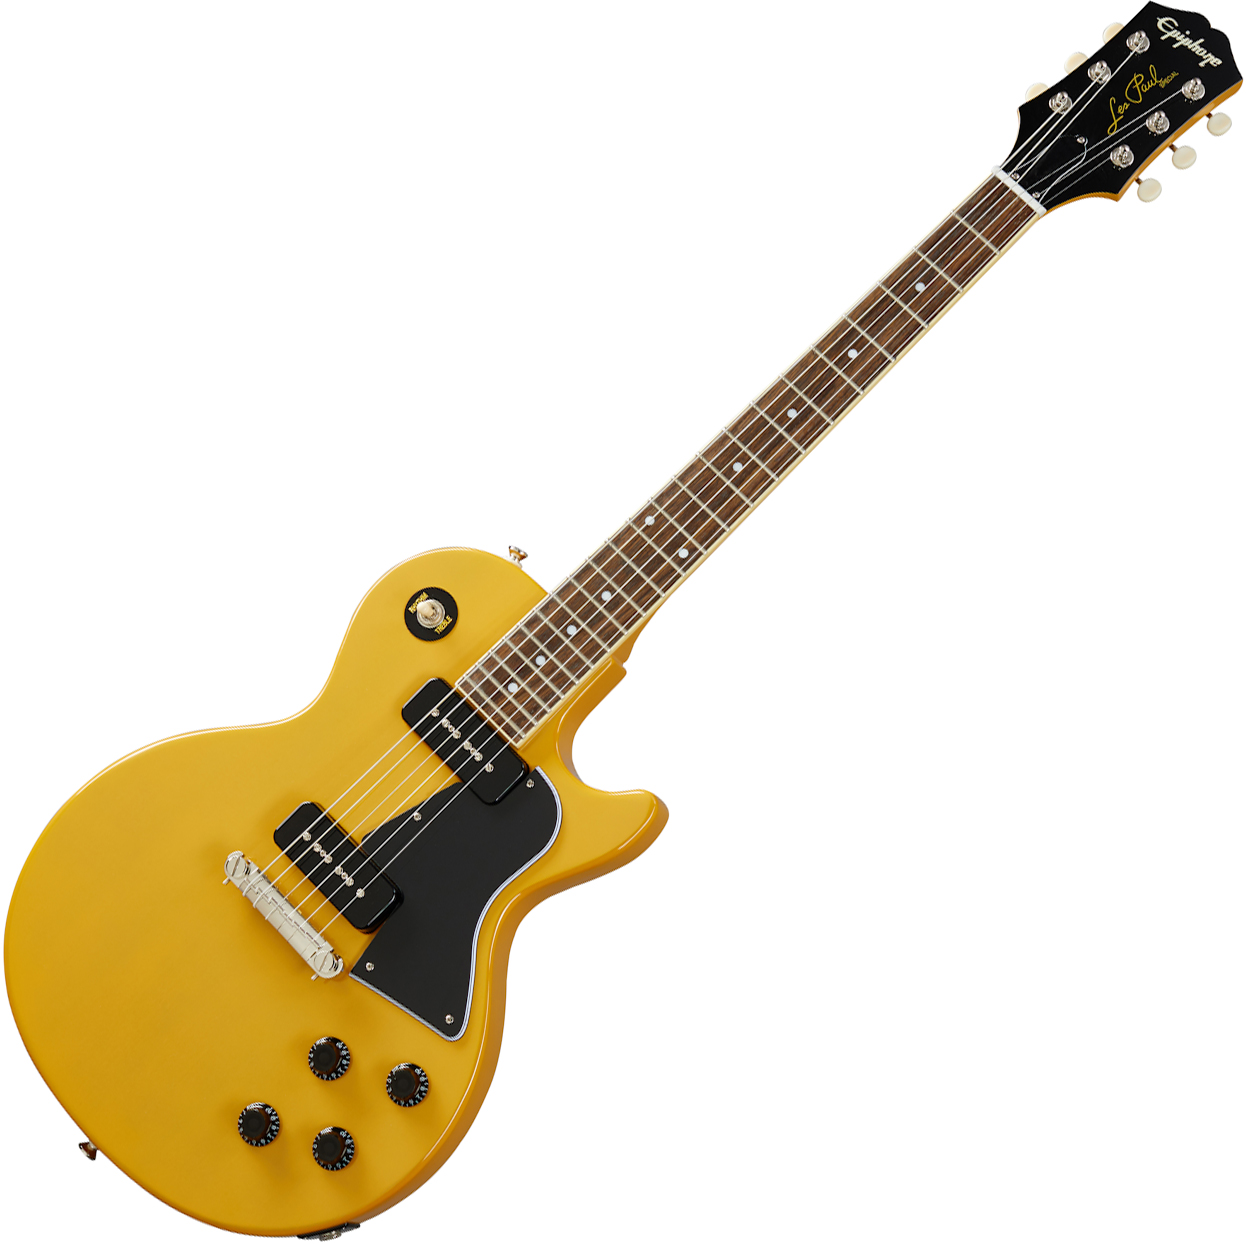 Alternativa alla costosissima Gibson LP Spe­cial 60 TV Yellow VOS p90 . Cambio strategia!